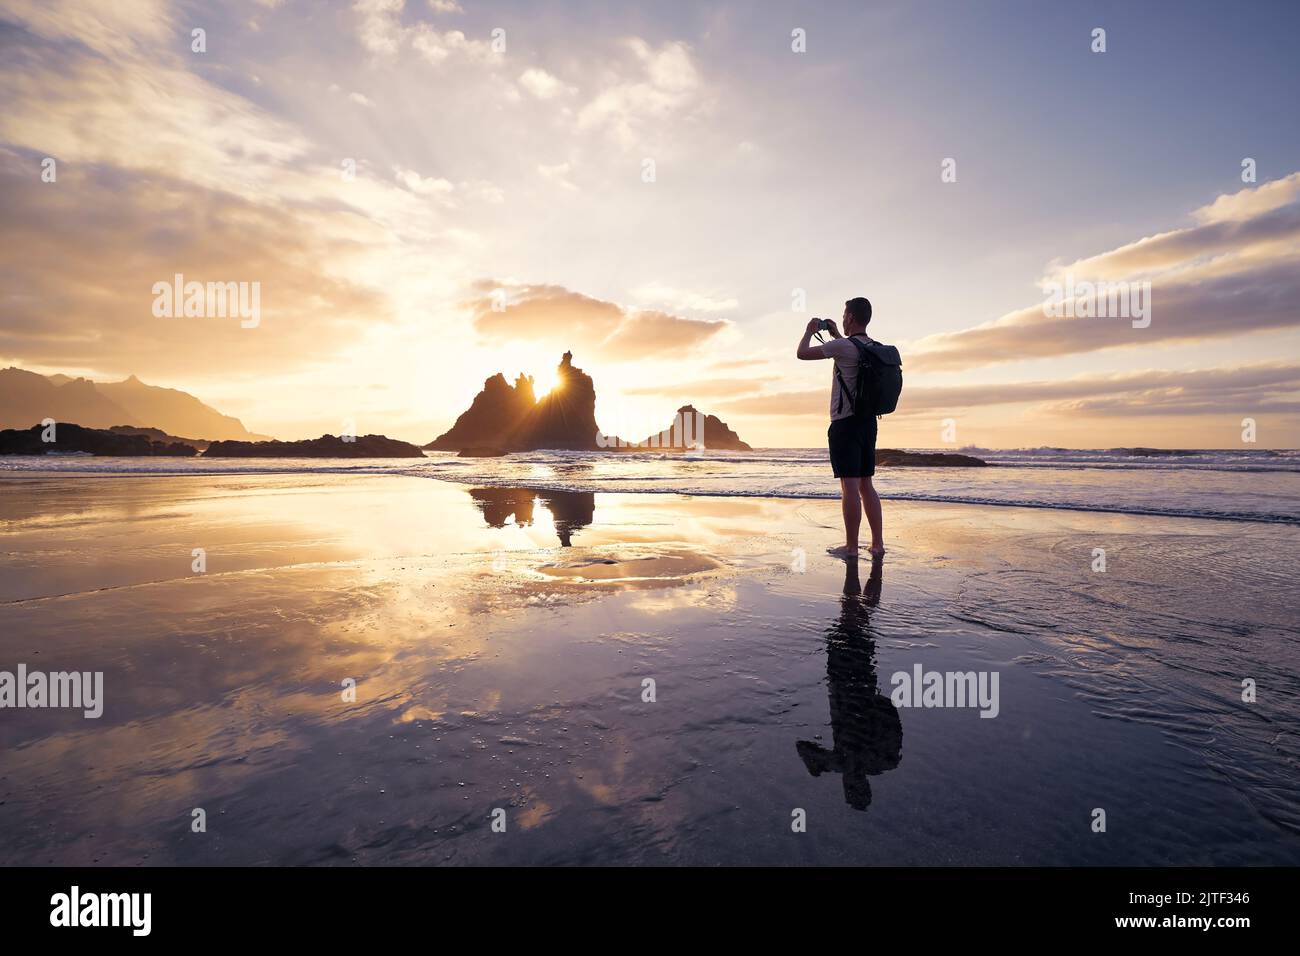 Uomo durante fotografare il paesaggio con la scogliera. Fotografa sulla spiaggia al bellissimo tramonto. Tenerife, Isole Canarie, Spagna. Foto Stock